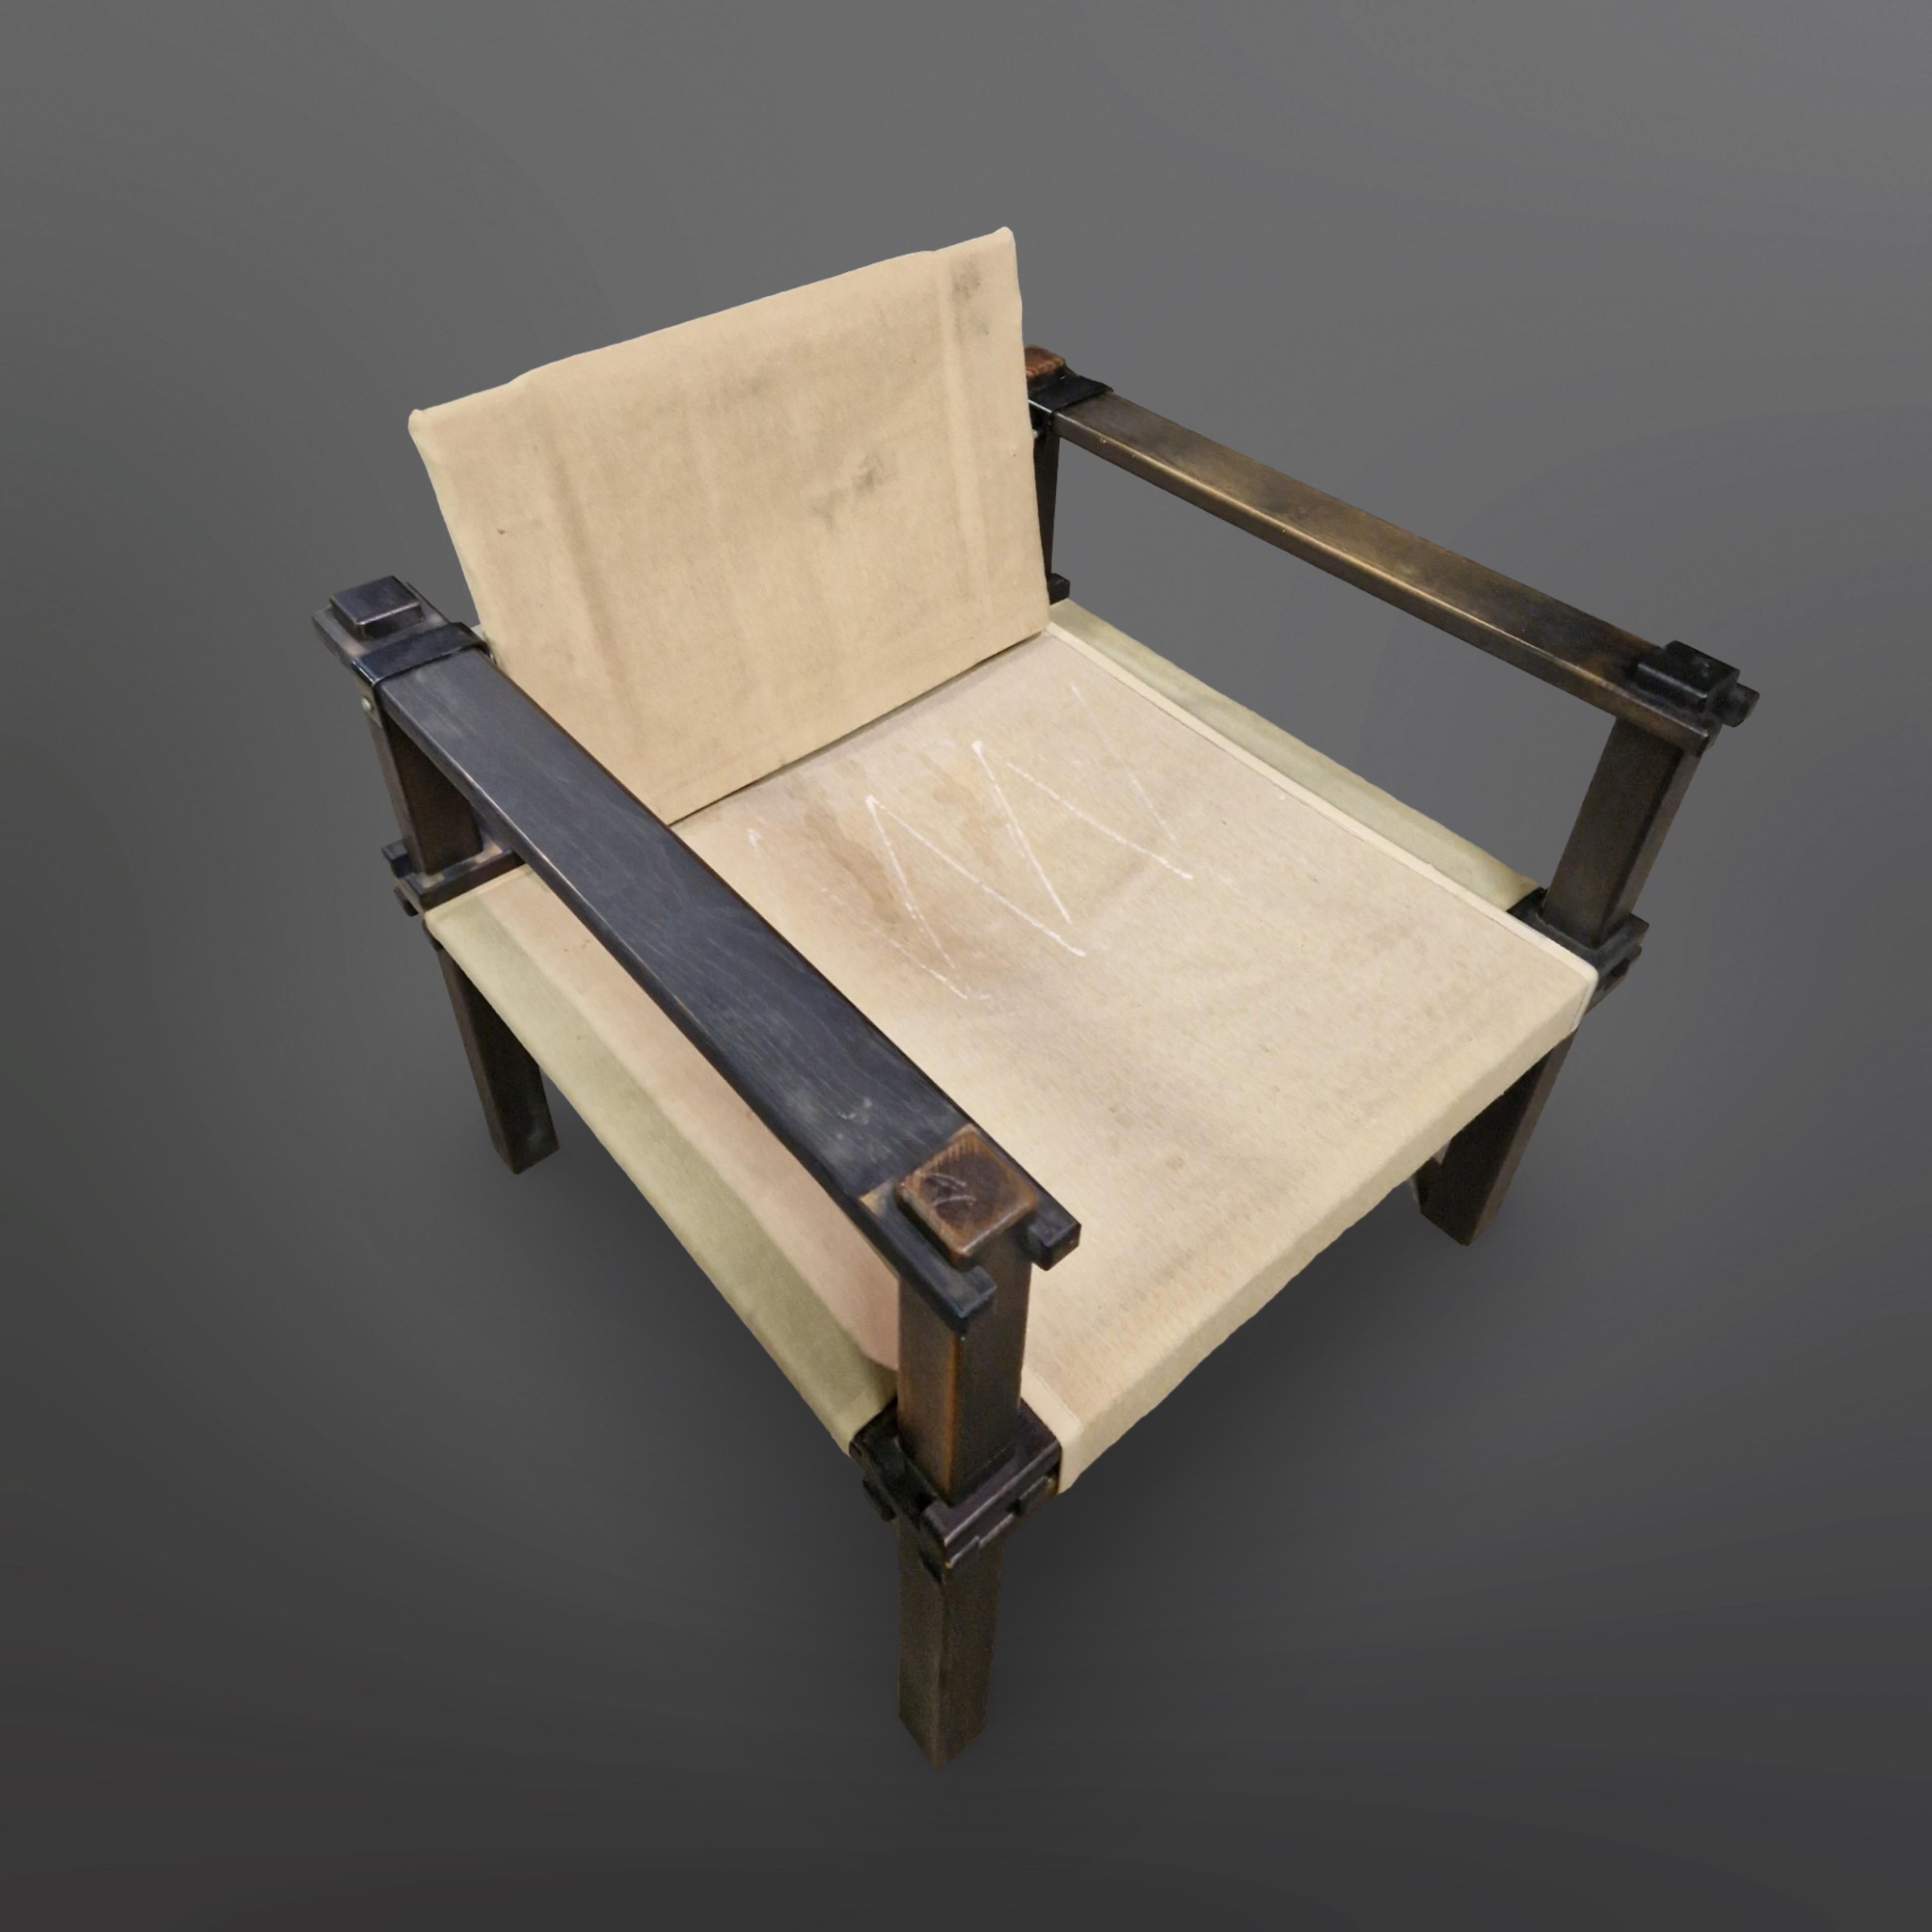 Chaises paysannes d'origine et tables d'appoint assorties. Conçu par Gerd Lange pour Bofinger dans les années 1960. Elles sont entièrement fabriquées en bois avec des assemblages ingénieux. La construction de la chaise est maintenue par l'assise en